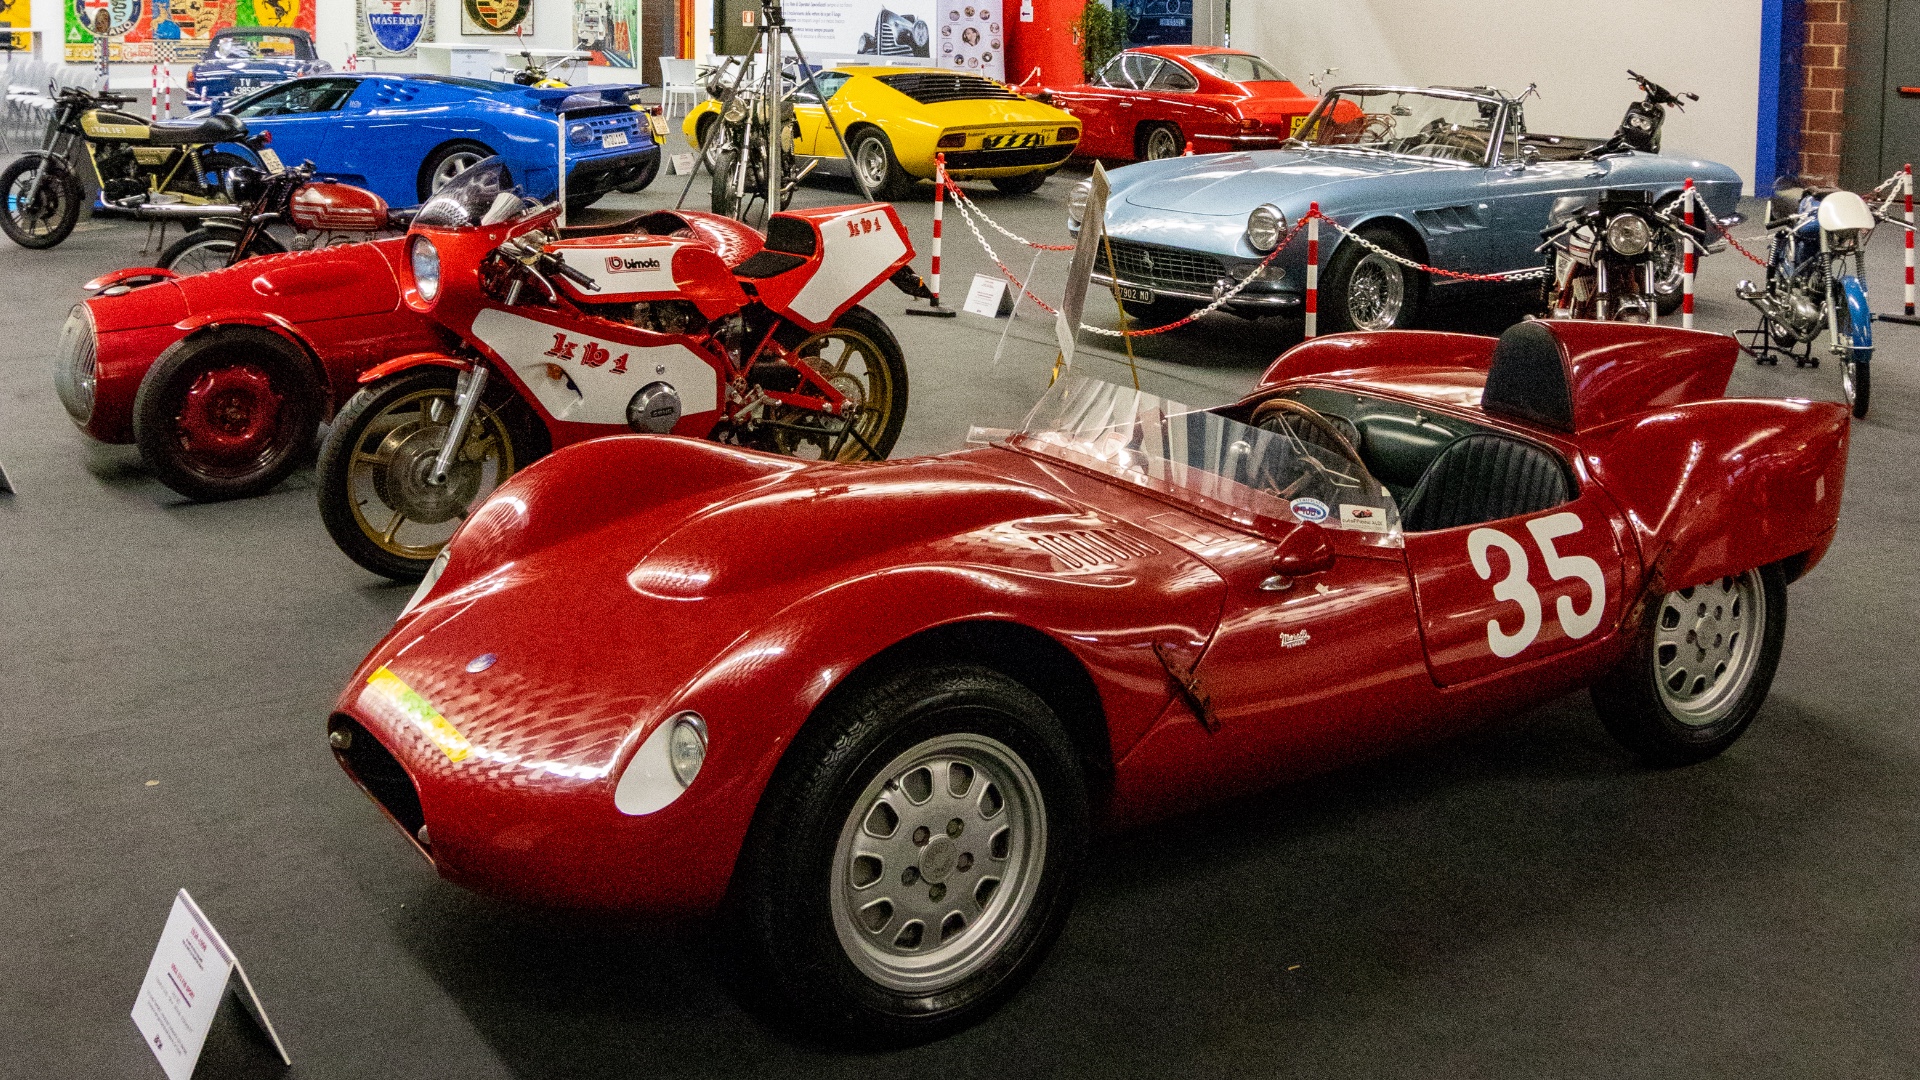 Nel weekend del 26-27 settembre torna la Modena Motor Gallery, mostra/mercato di auto e moto d’epoca.